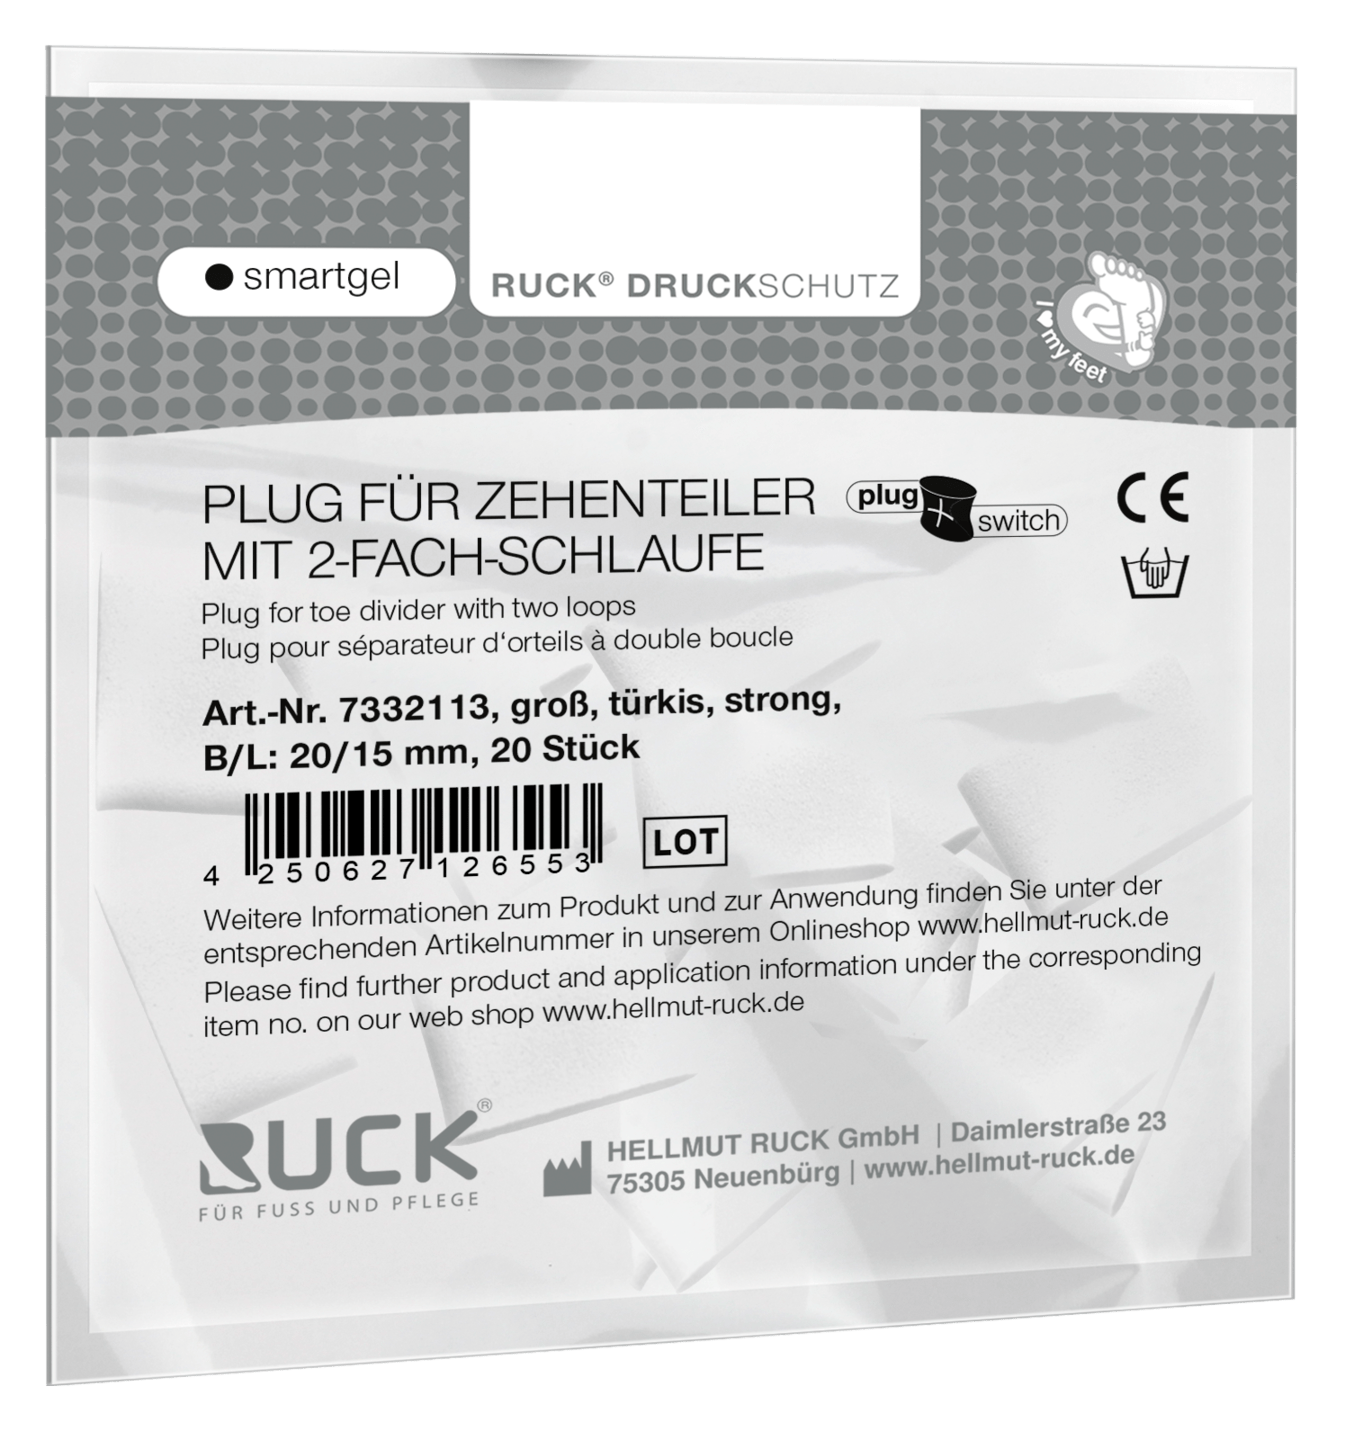 RUCK DRUCKSCHUTZ - Plugs für RUCK® DRUCKSCHUTZ smartgel plug+switch Zehenteiler mit 2-fach Schlaufe in türkis